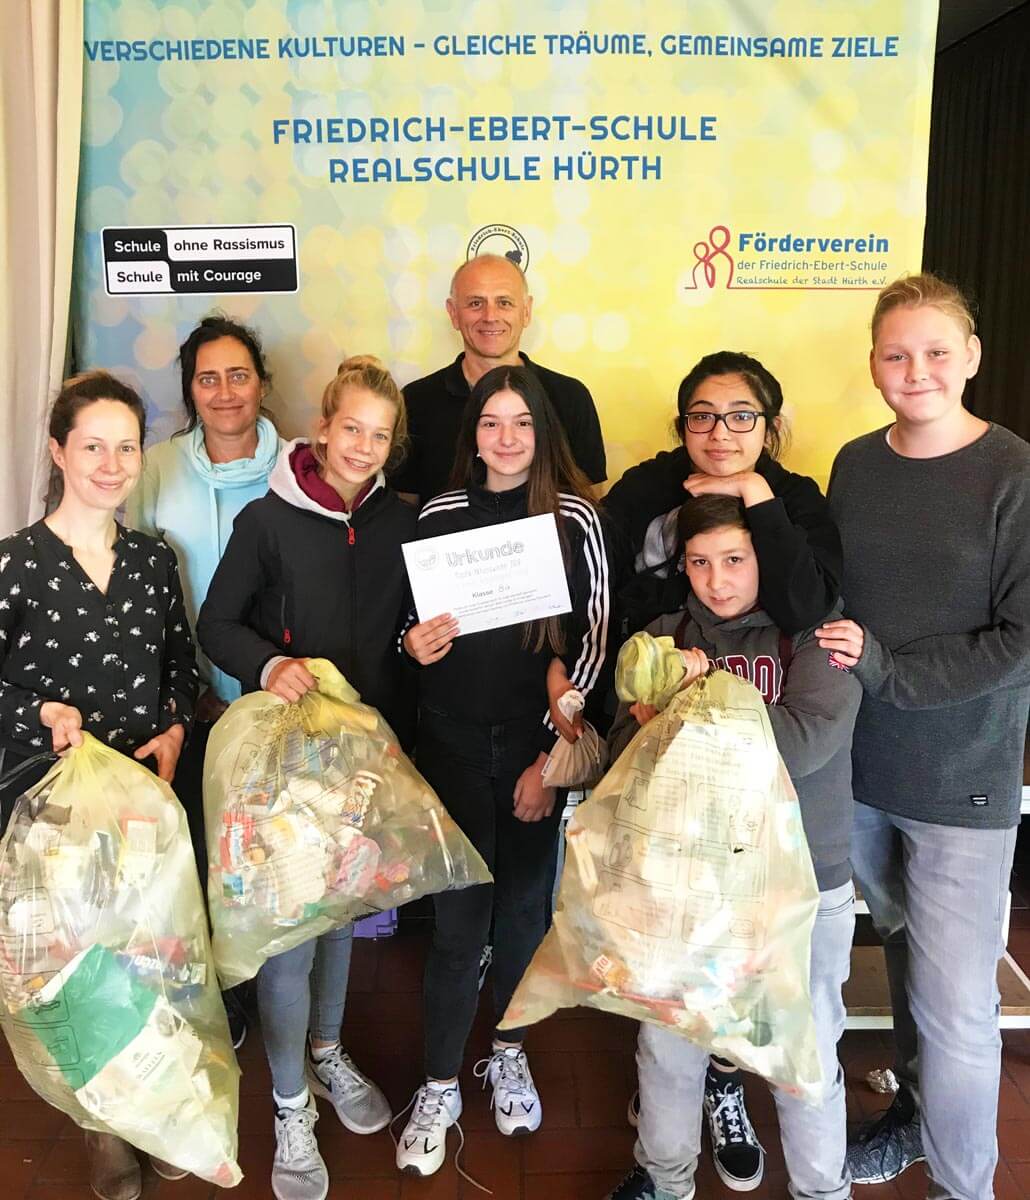 Aktion zur Nachhaltigkeit an der Friedrich-Ebert-Schule Hürth